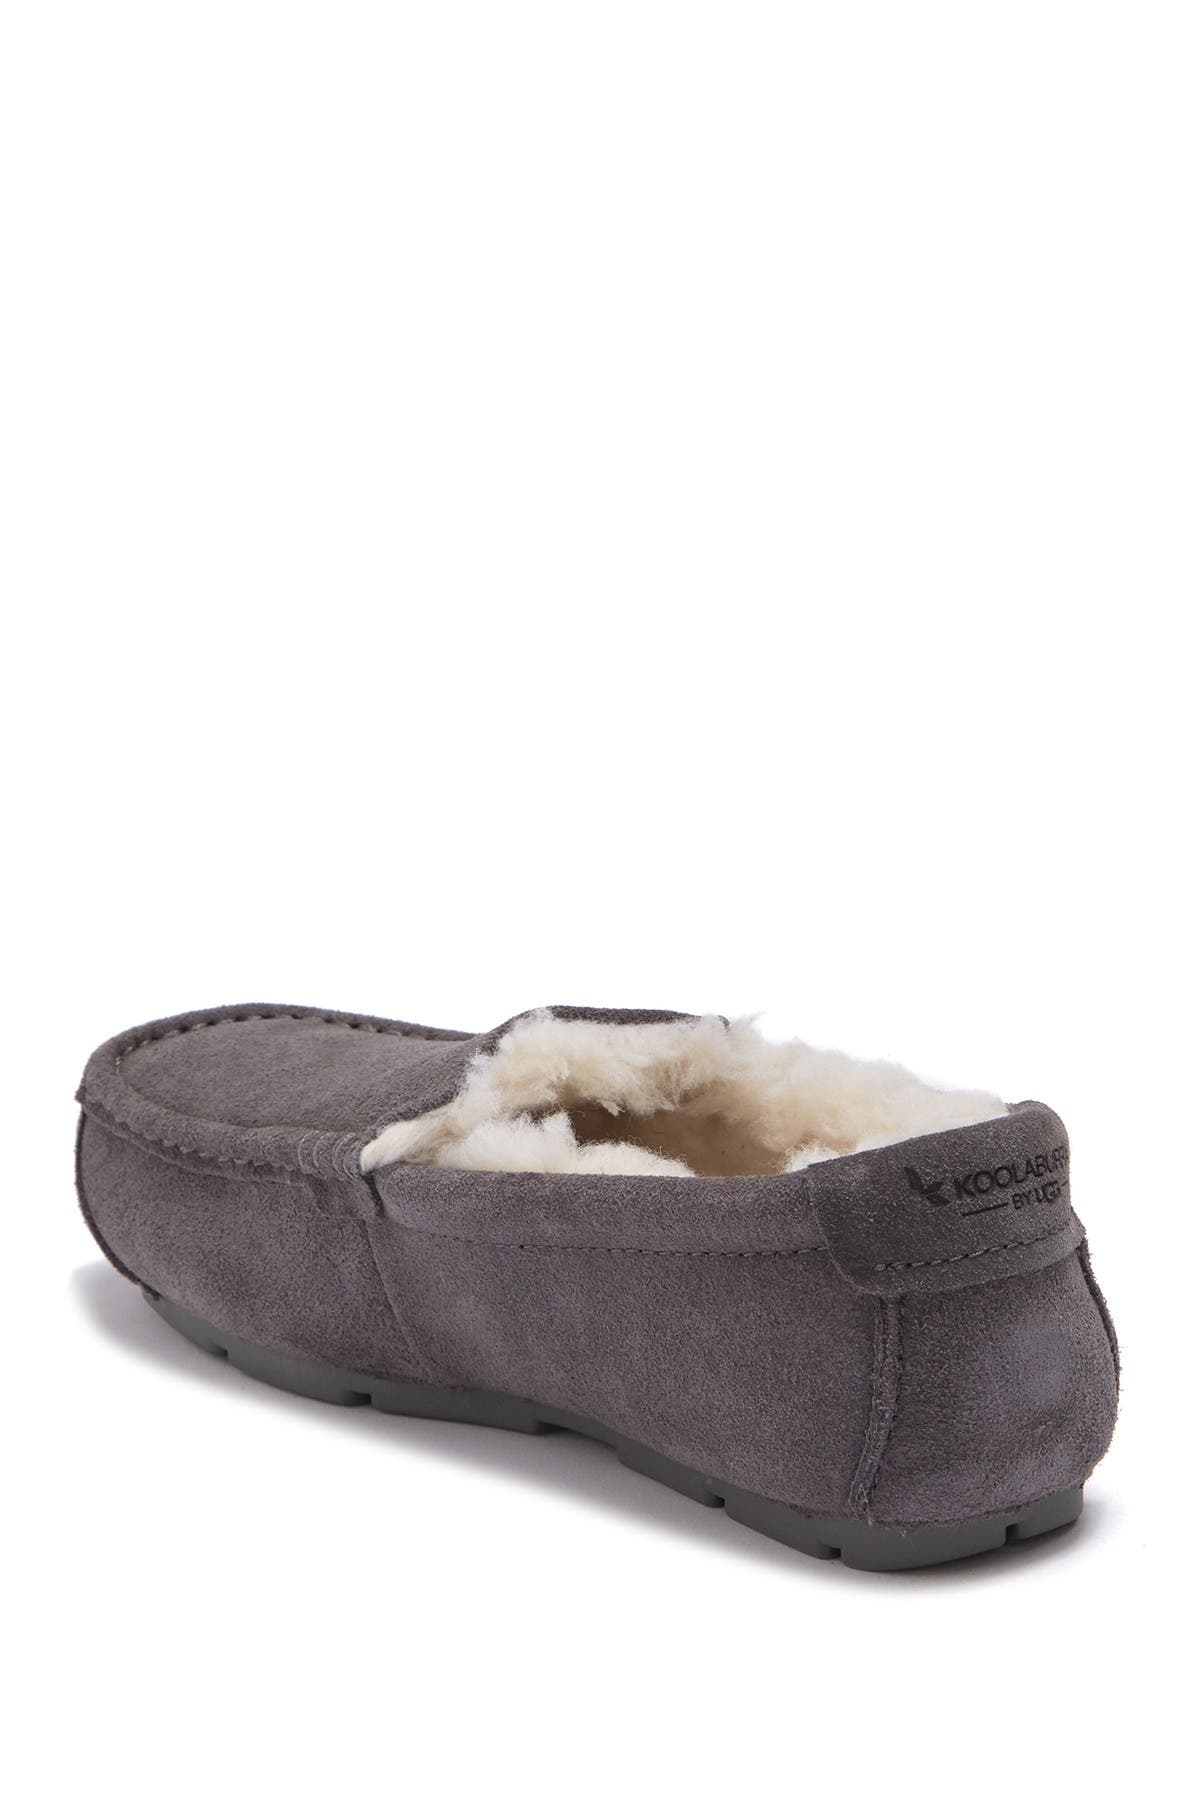 men's koolaburra by ugg slippers